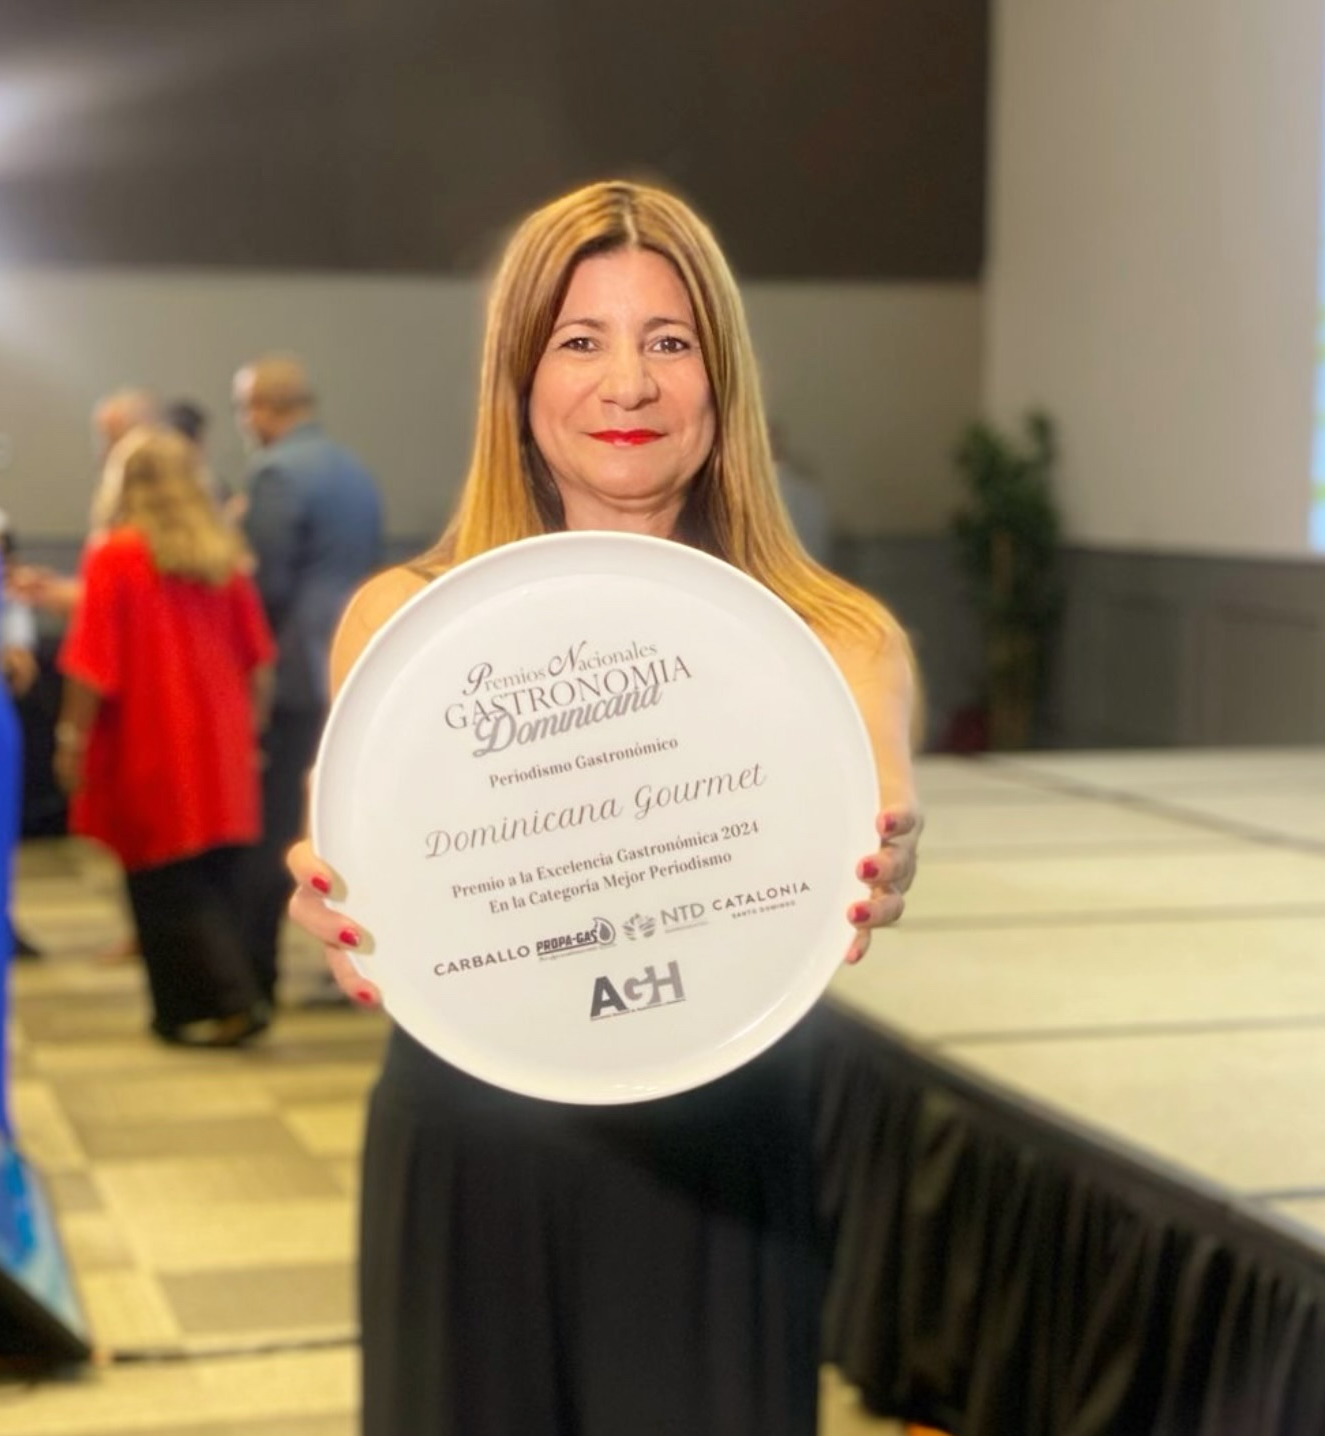 Luisa Feliz recibe premio al mejor periodismo gastronómico por la revista Dominicana Gourmet